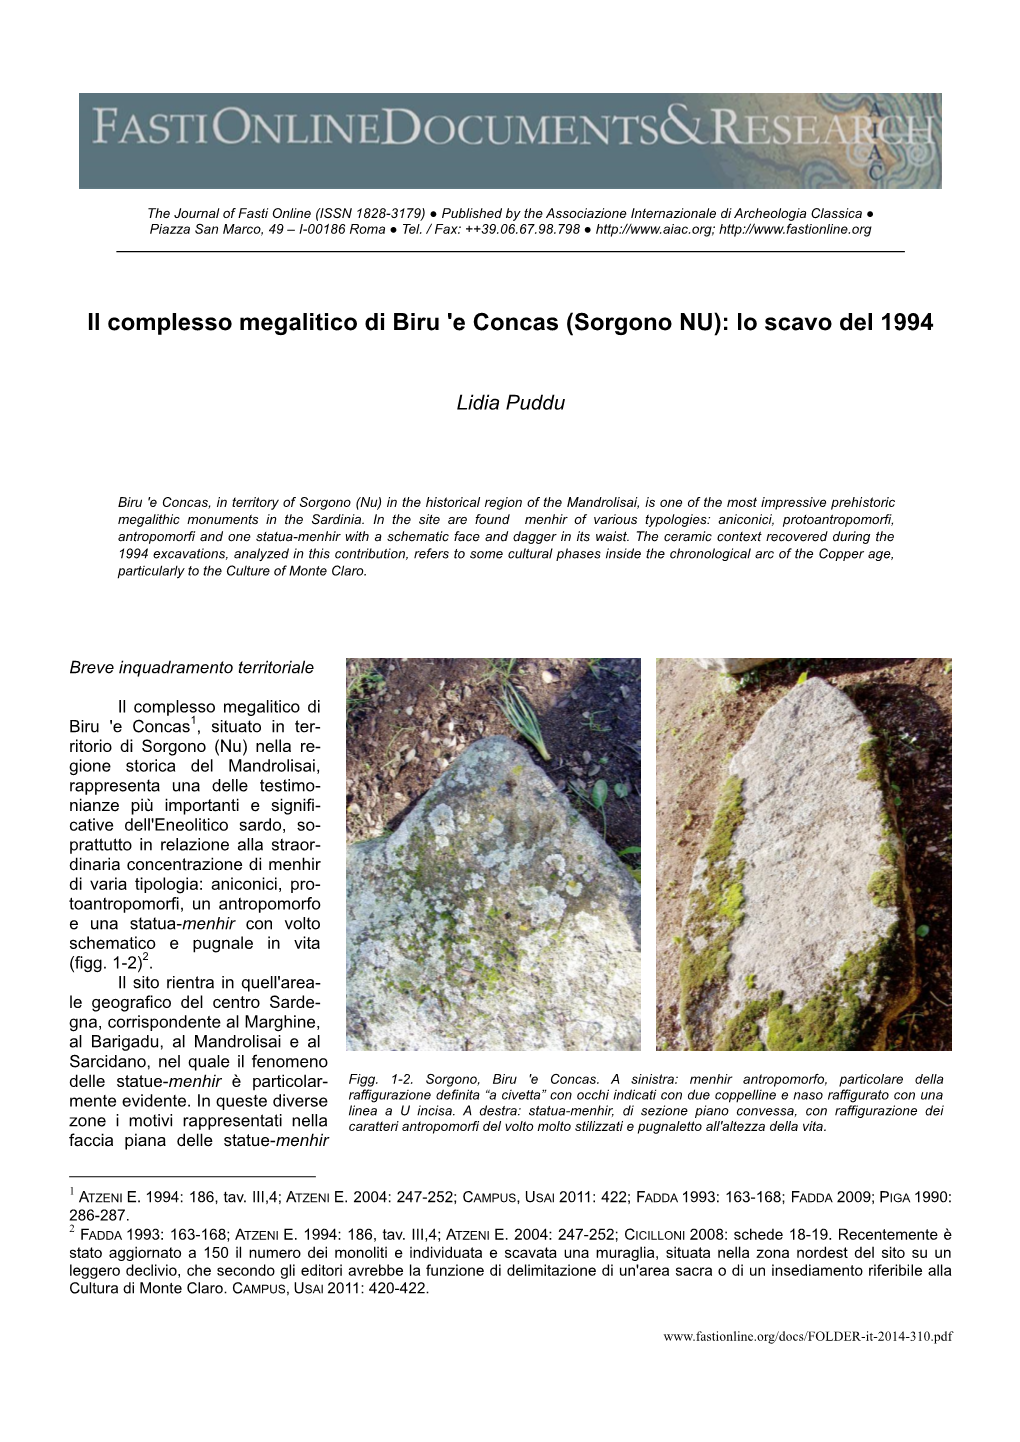 Il Complesso Megalitico Di Biru 'E Concas (Sorgono NU): Lo Scavo Del 1994